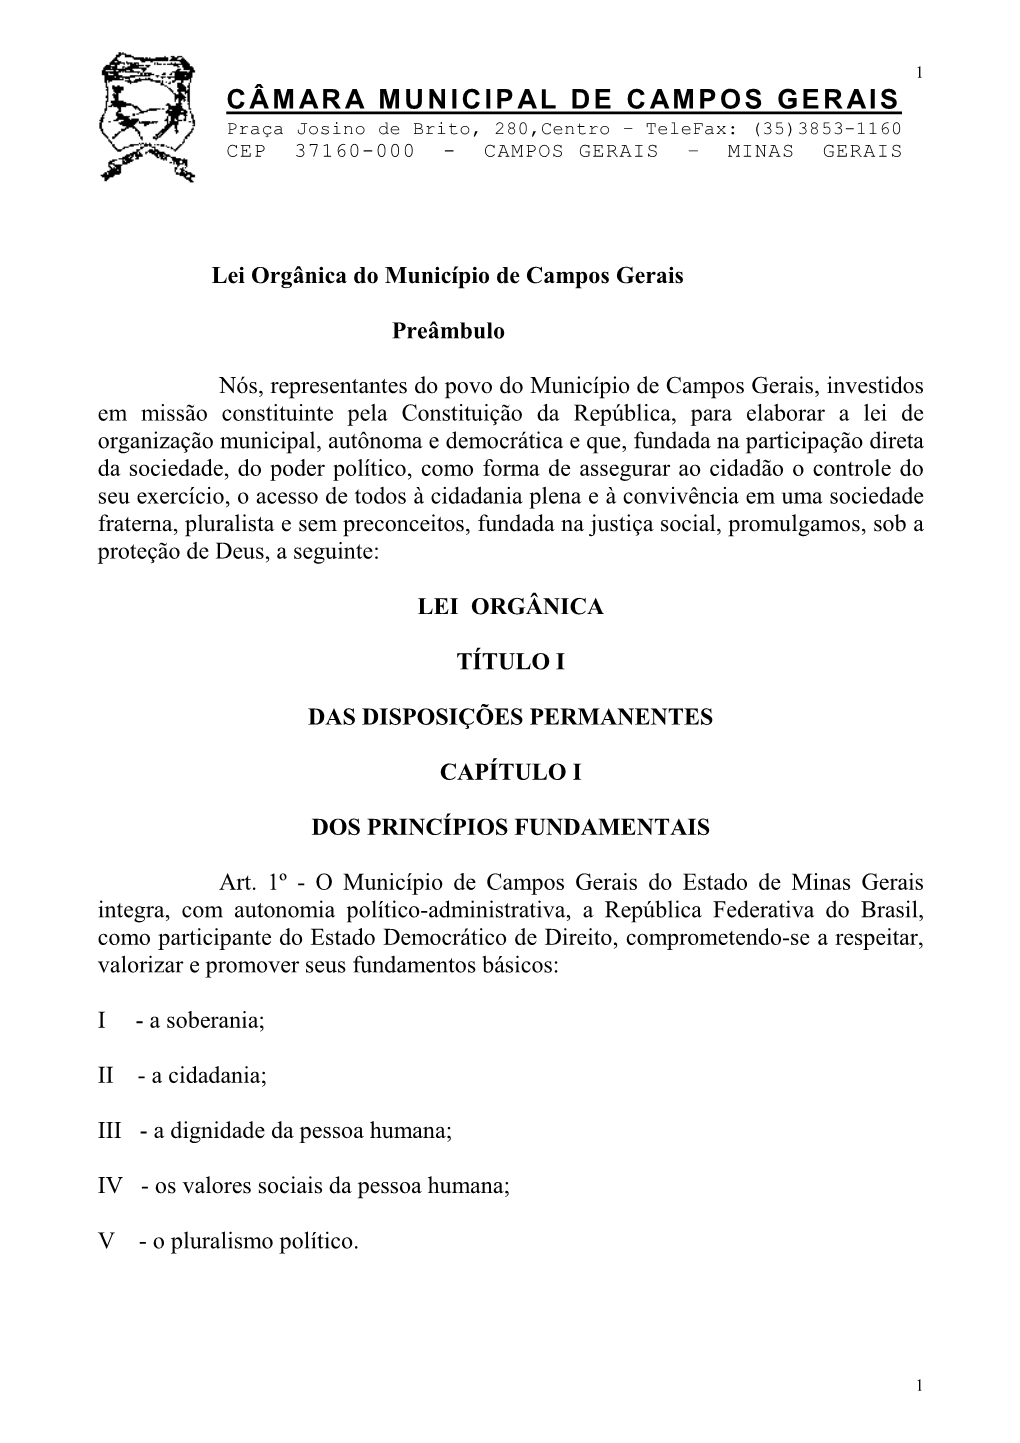 Lei Orgânica Do Município De Campos Gerais